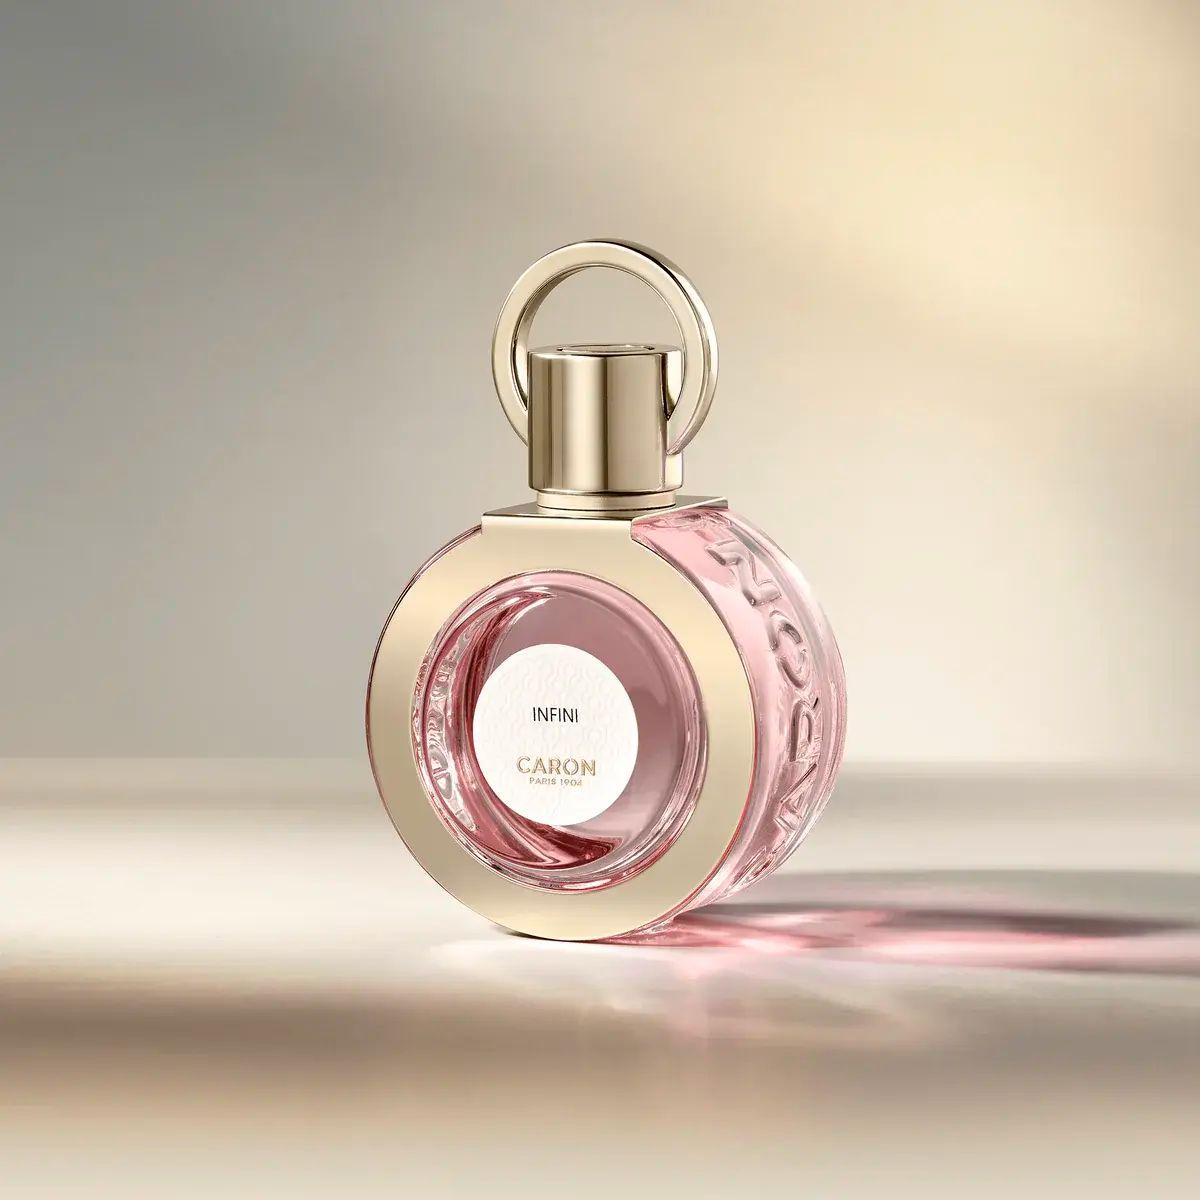 Caron - Infini 50 ml | Perfume Lounge